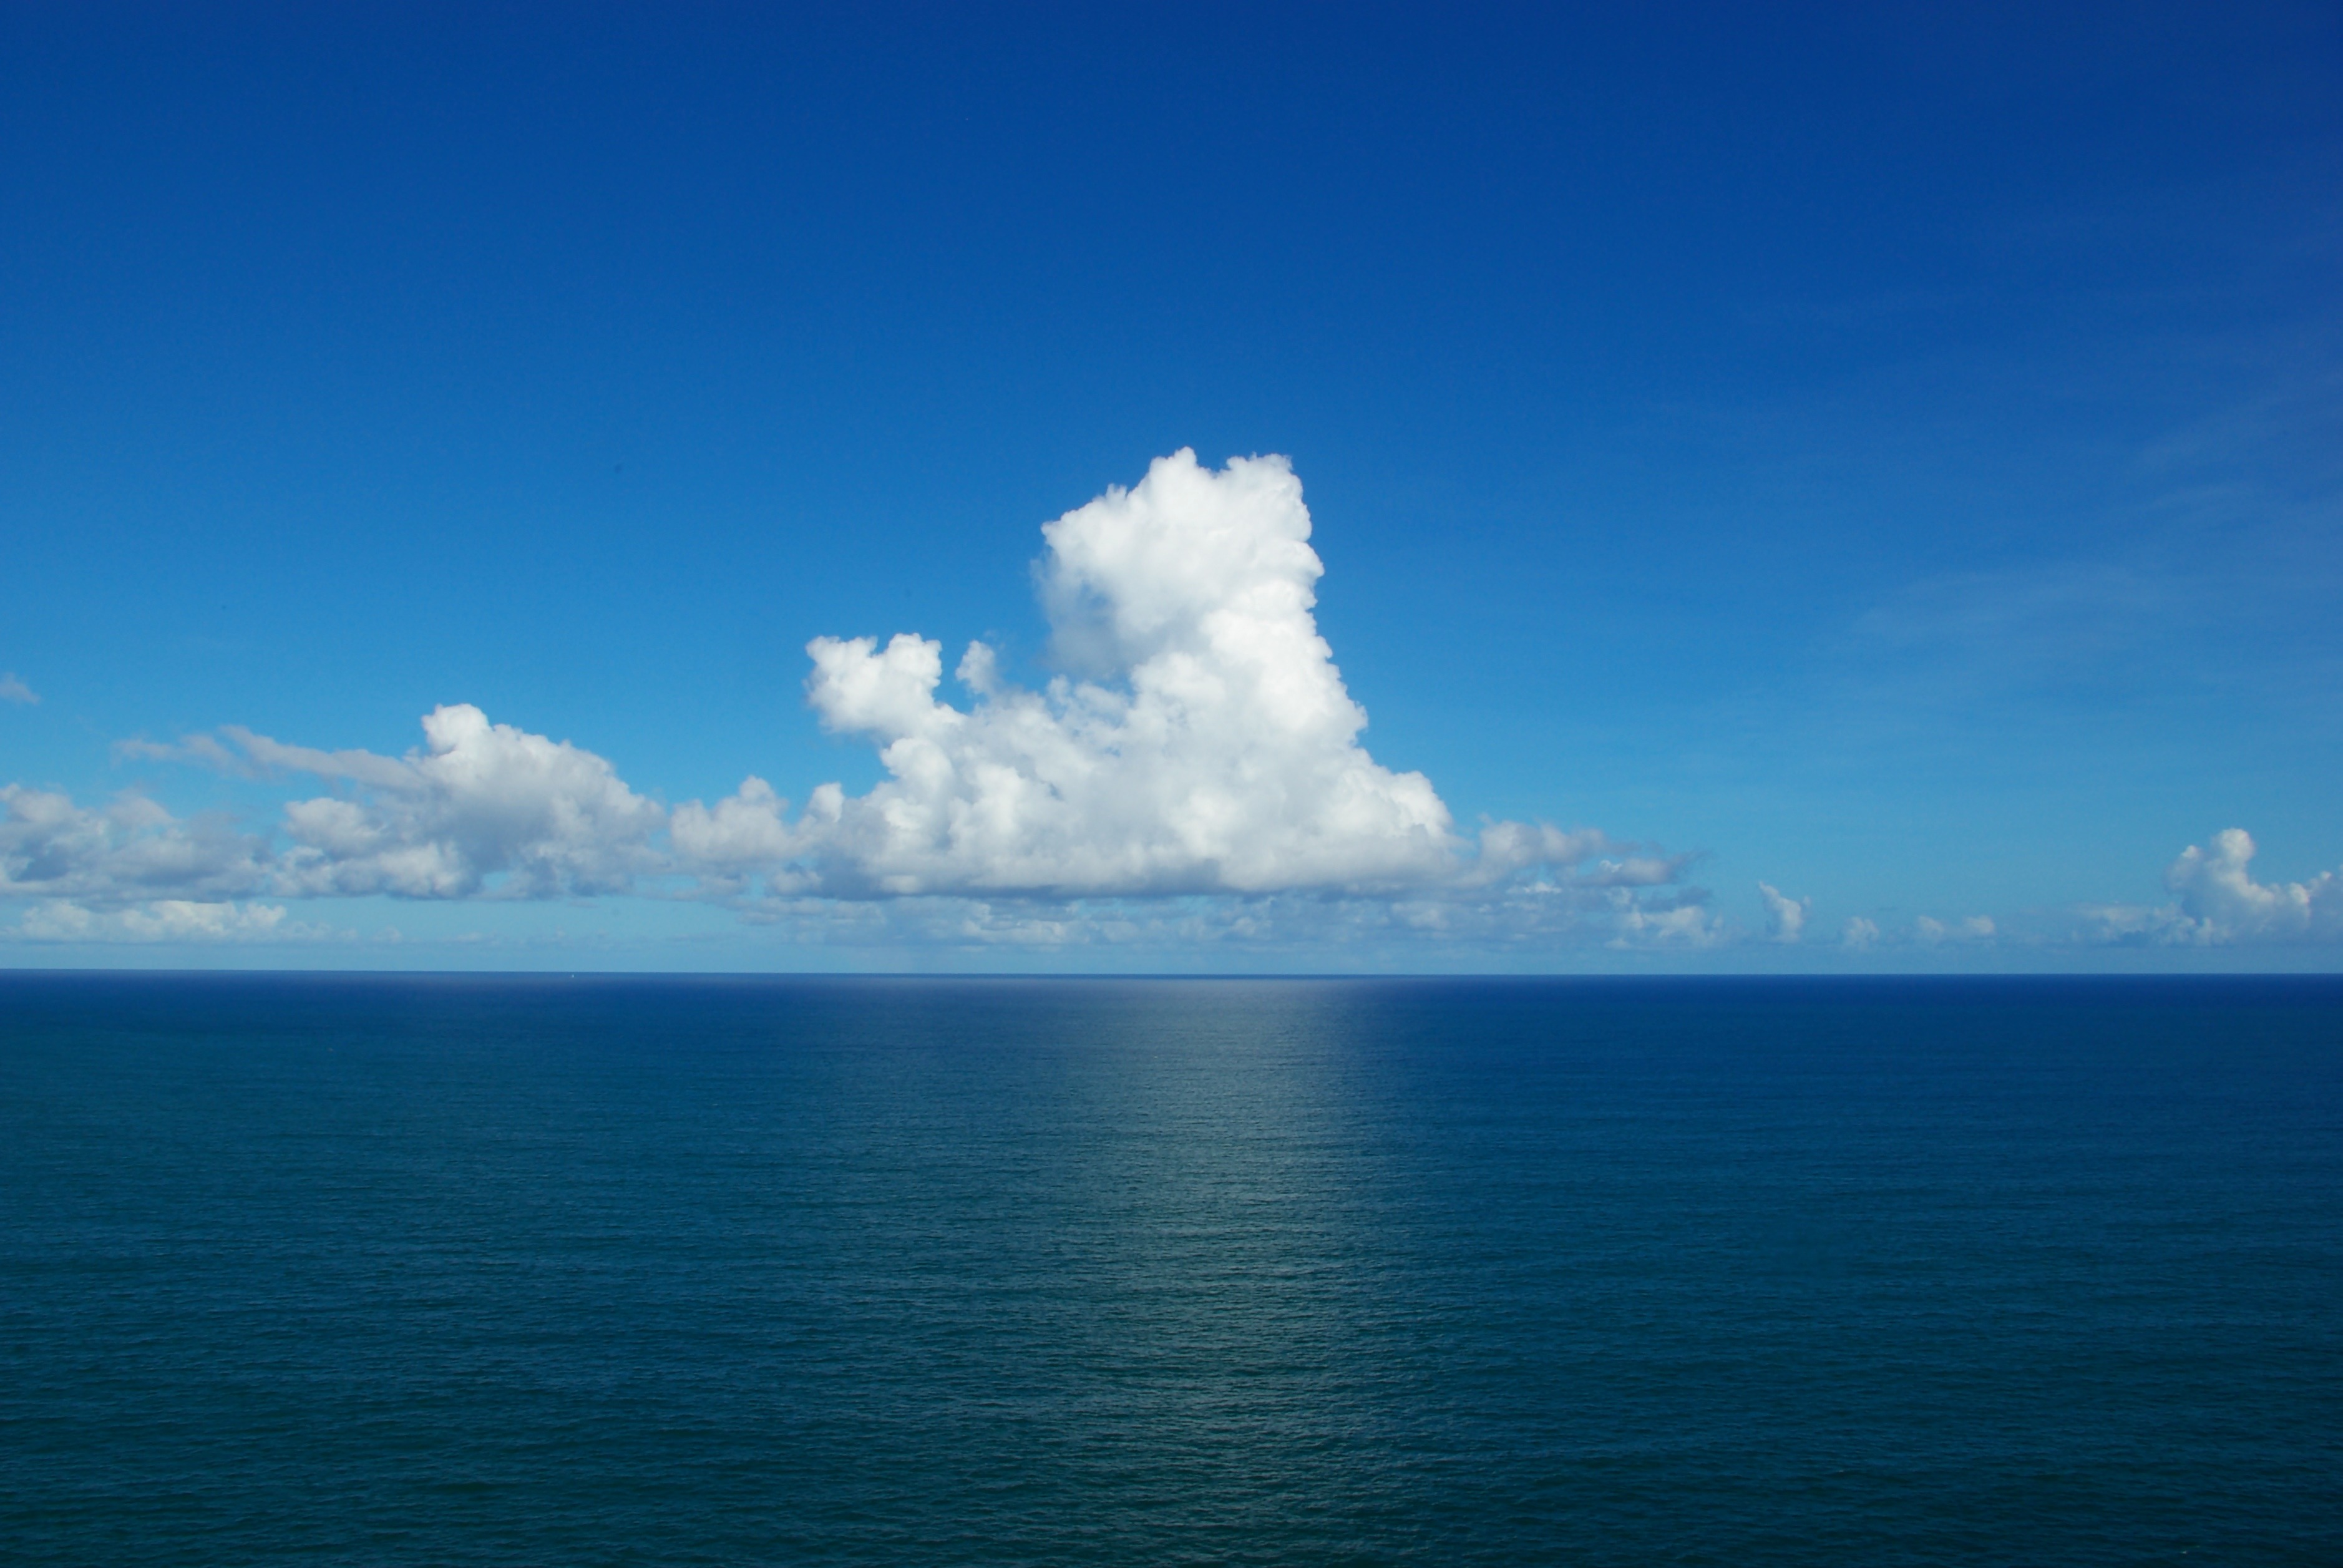 L'océan Atlantique s'est formé durant le Crétacé, par l'élargissement de sa partie nord et la naissance de sa moitié sud. Il se serait ouvert voici environ 100 millions d'années. © Tiago Fioreze, Flickr, cc by sa 3.0